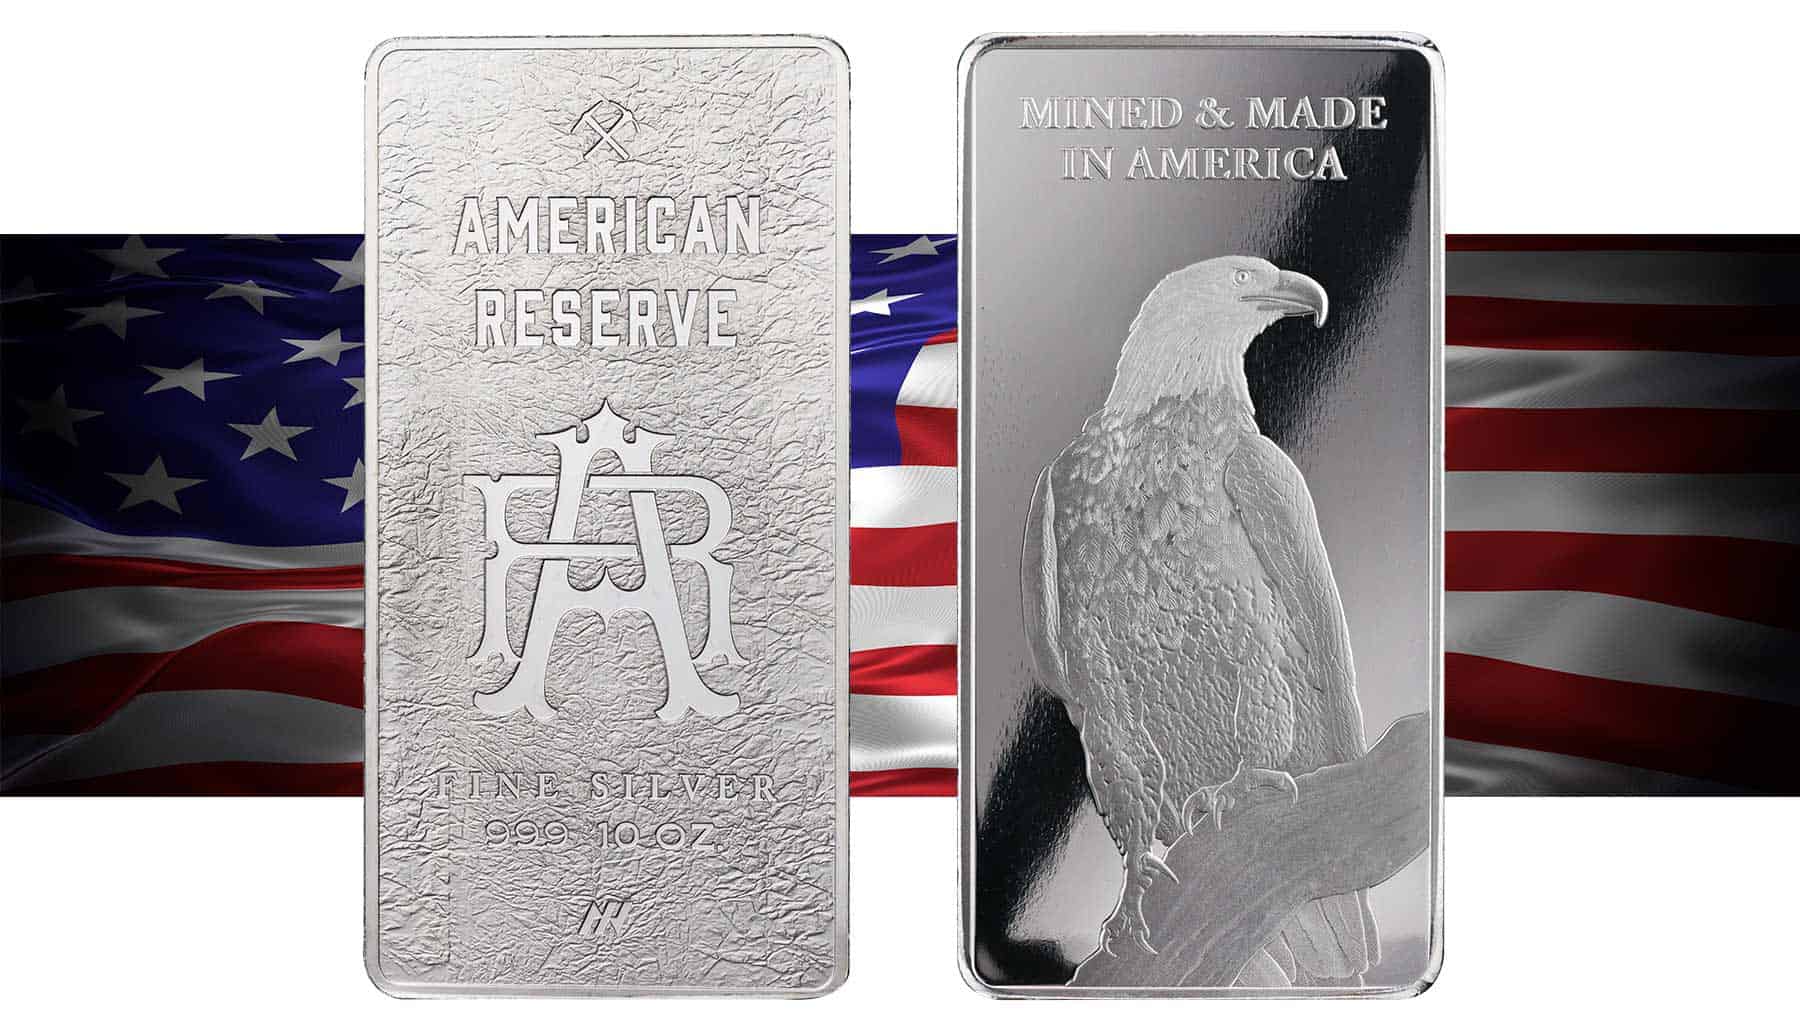 American Sourced fine silver bars